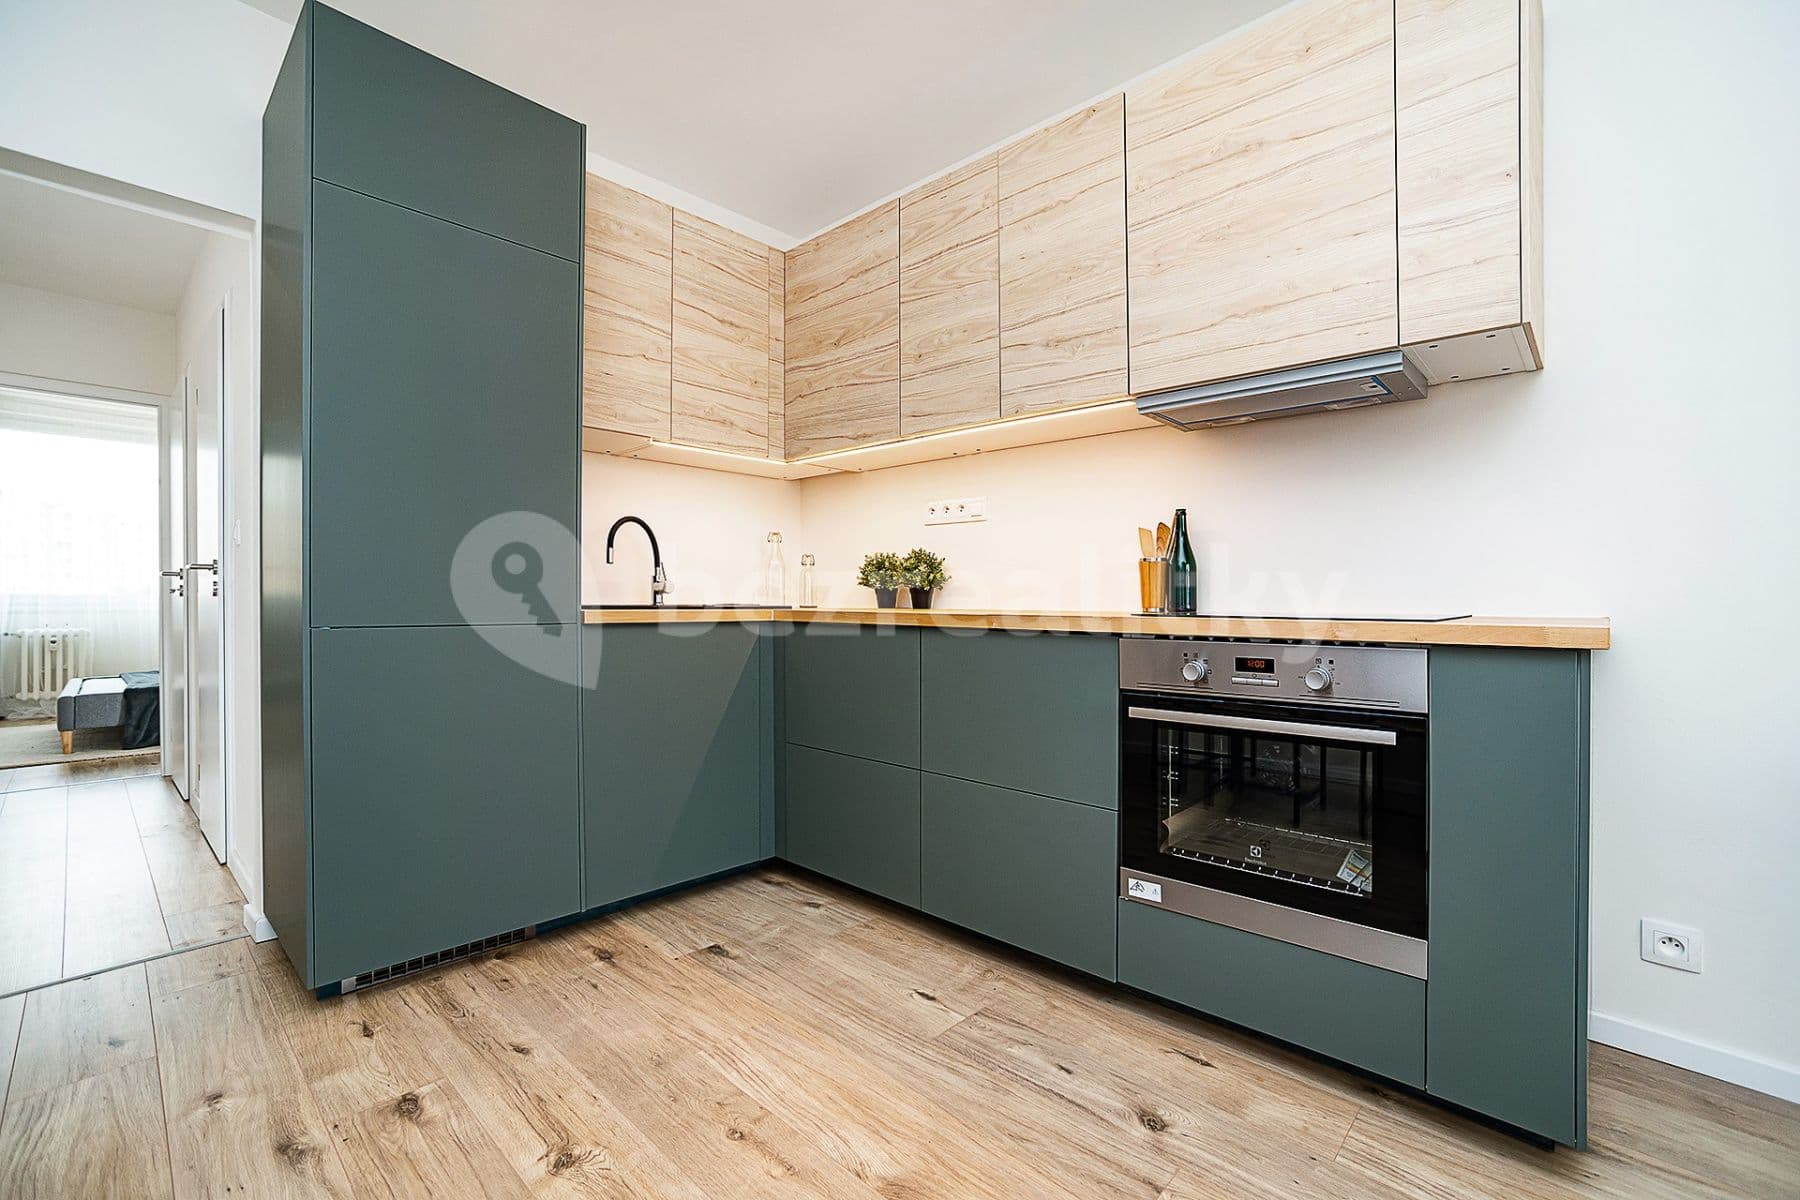 2 bedroom with open-plan kitchen flat for sale, 68 m², Sečská, Prague, Prague